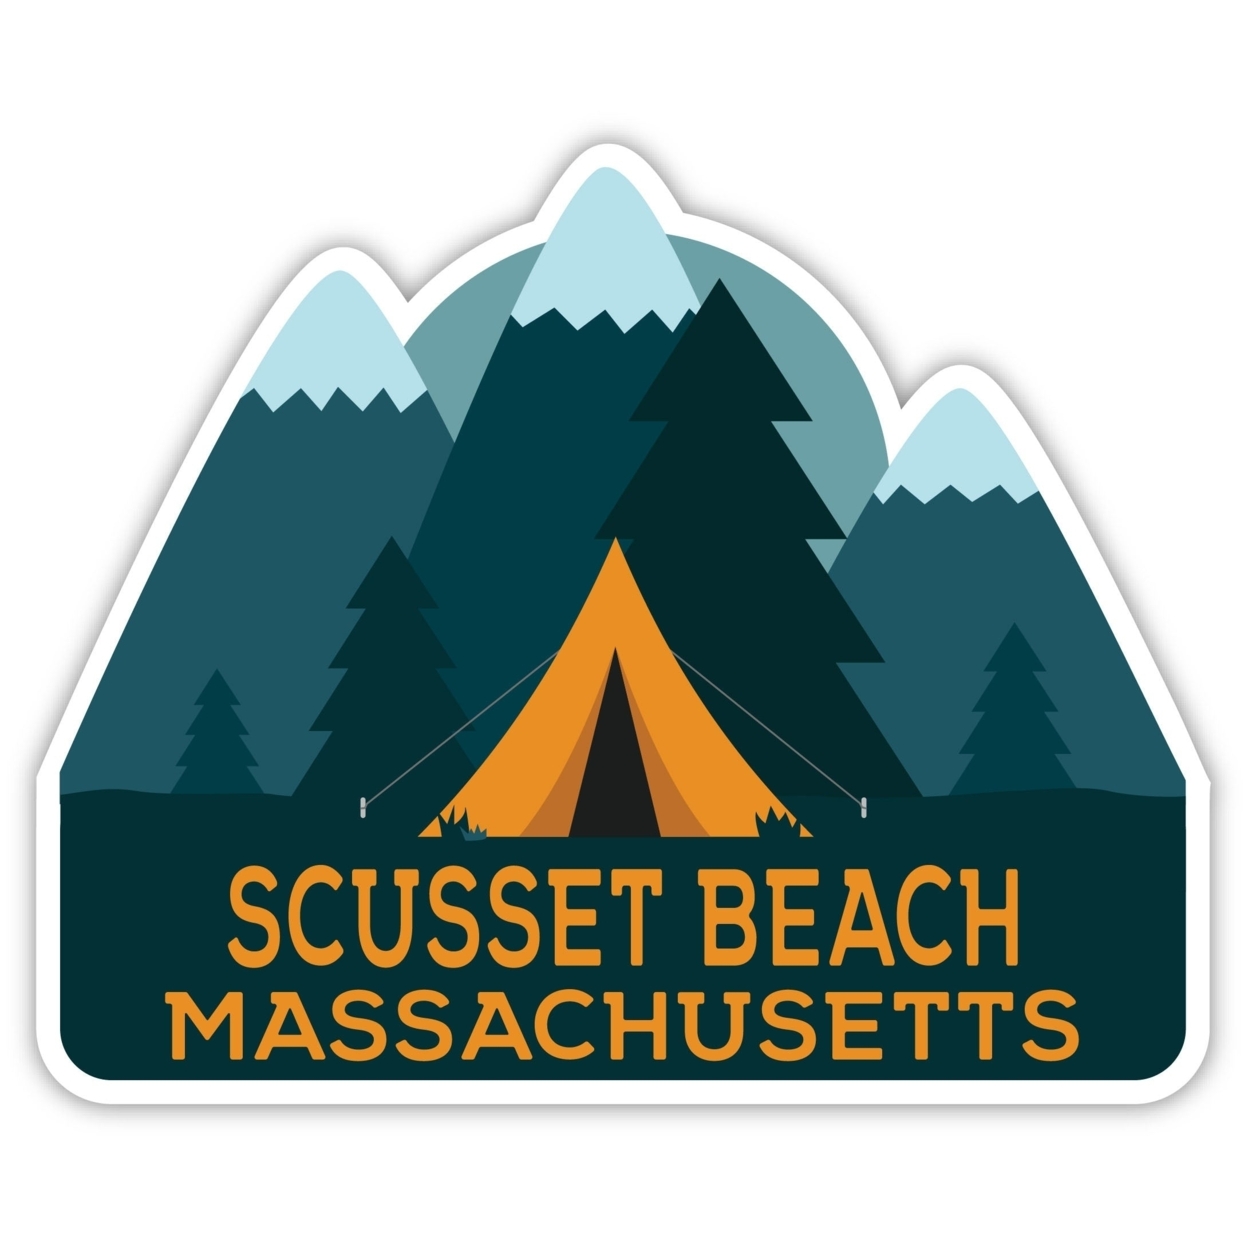 Scusset Beach Massachusetts Souvenir Decorative Stickers (Choose Theme And Size) - Single Unit, 2-Inch, Tent